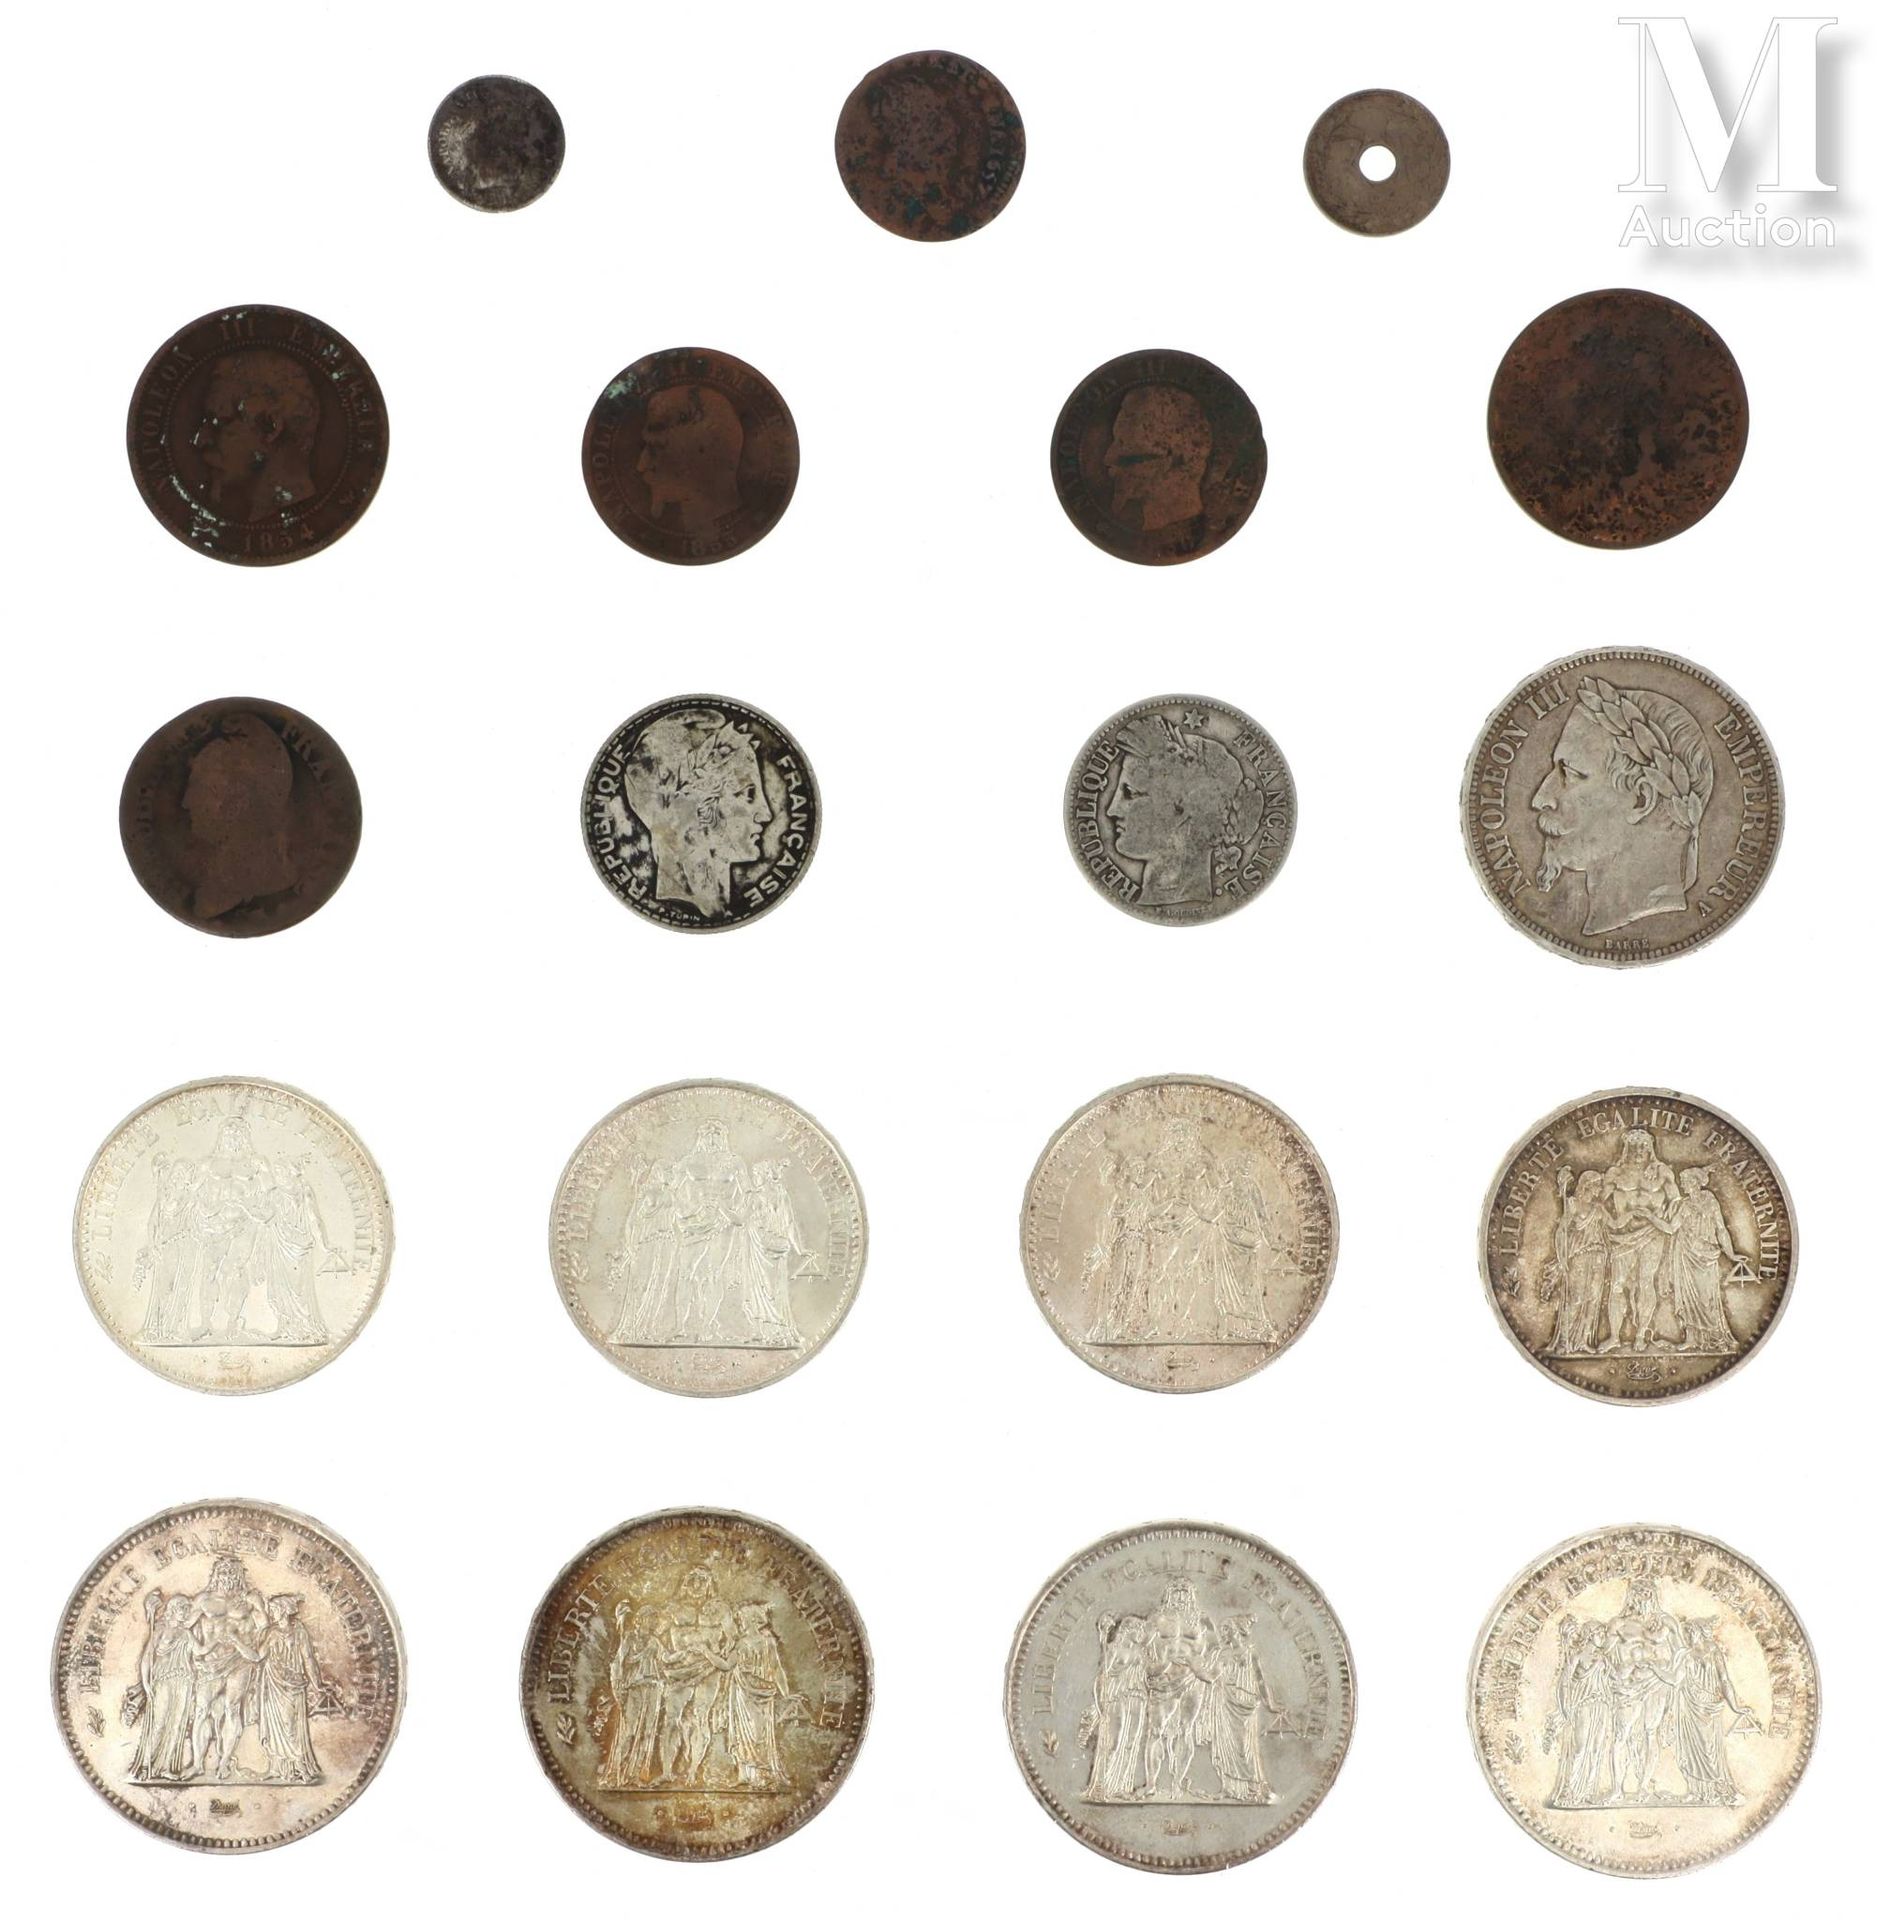 LOT DE PIECES DE MONNAIE EN ARGENT Lotto di monete d'argento tra cui : 

- 4 x 5&hellip;